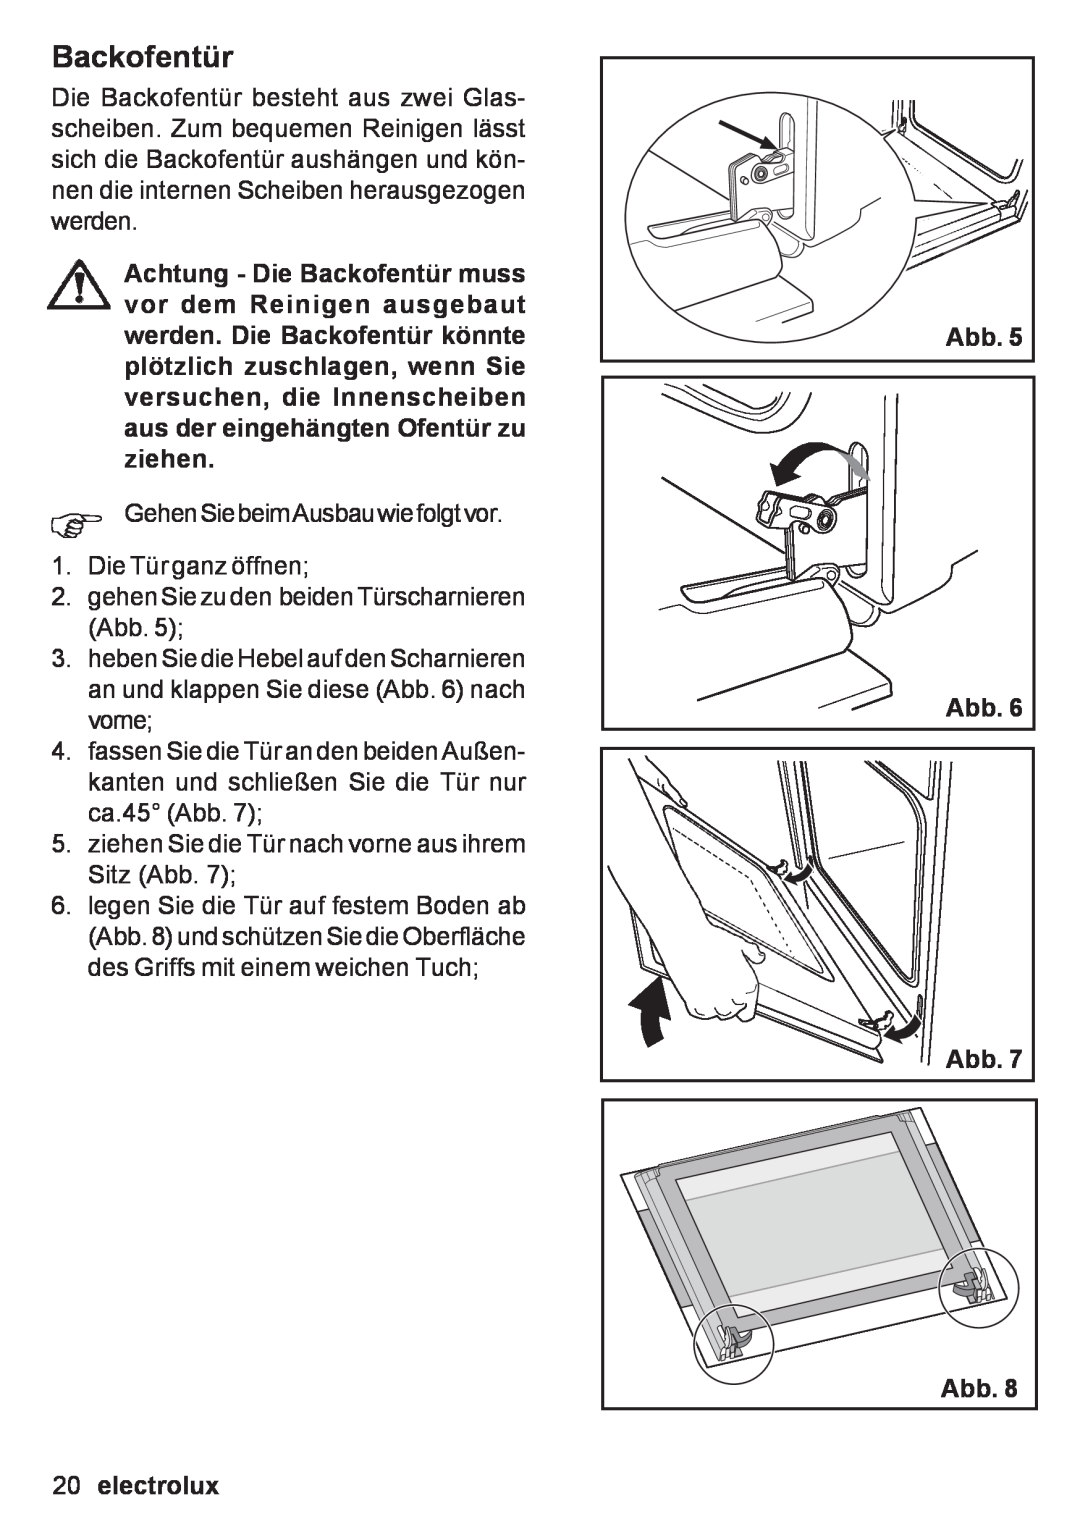 Electrolux EOB 53003 user manual Backofentür, electrolux, Abb Abb 